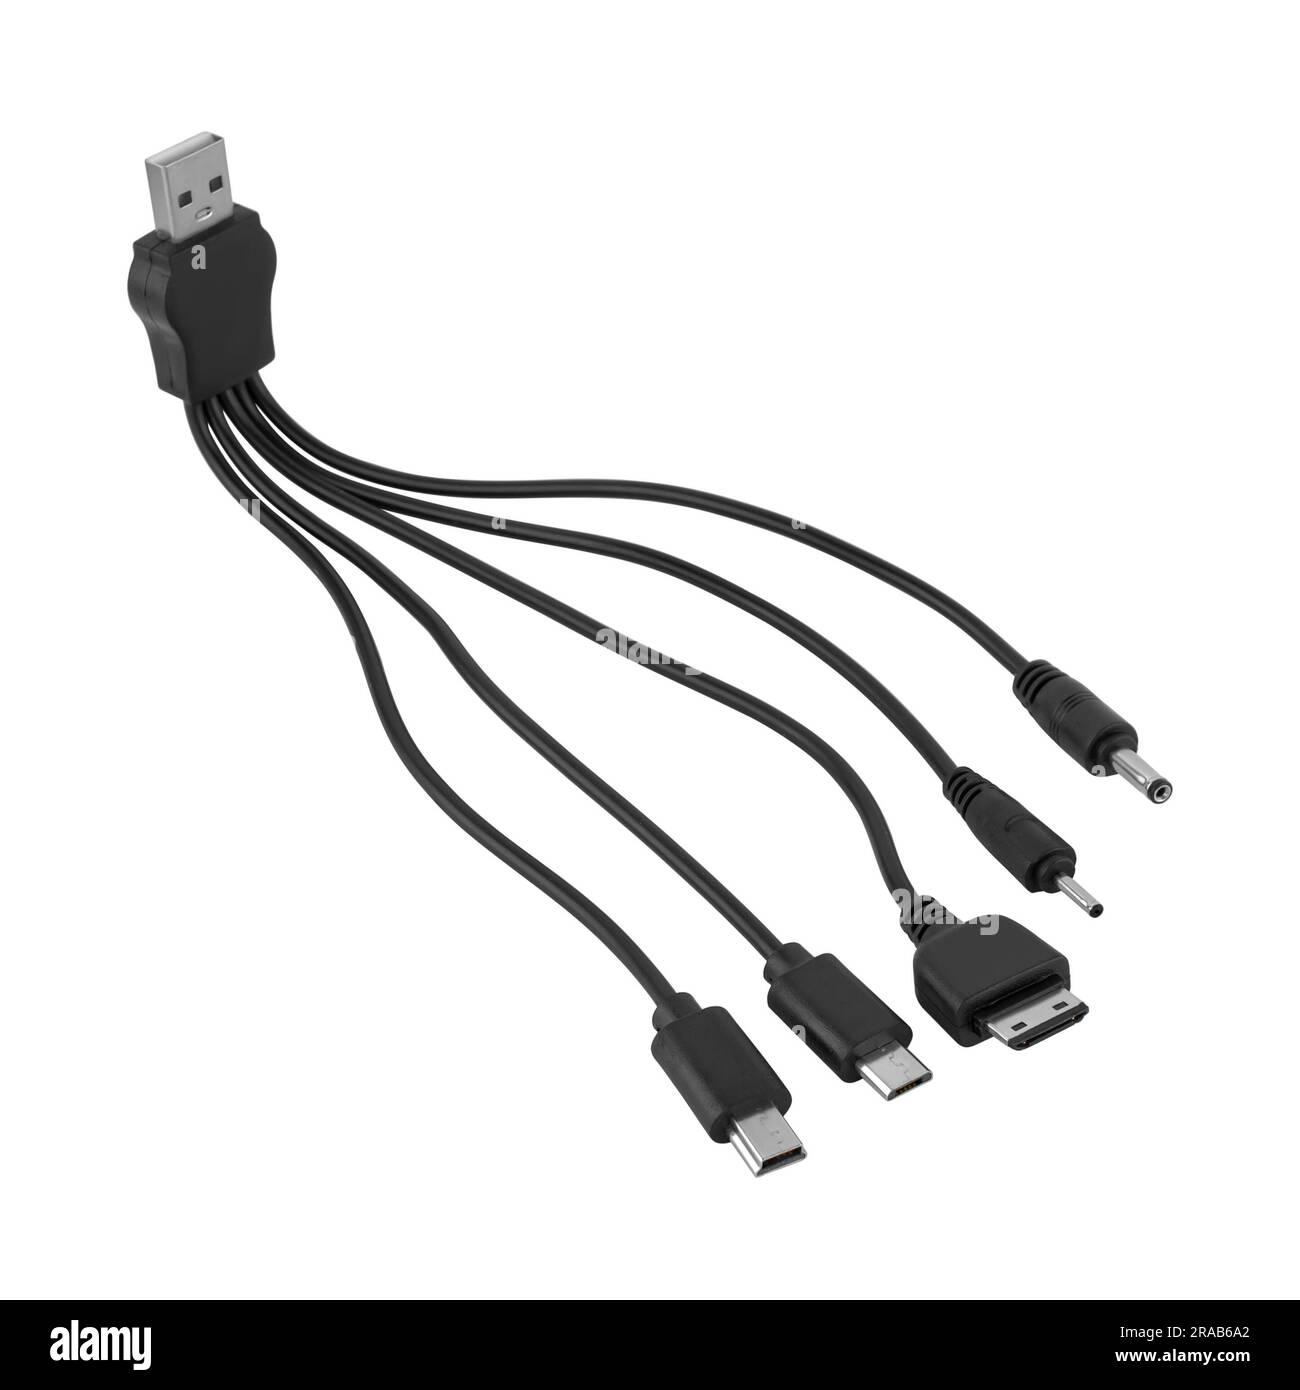 Câble adaptateur universel entre le connecteur USB et les connecteurs micro USB, mini-USB et autres connecteurs, fond blanc dans l'isolation Banque D'Images